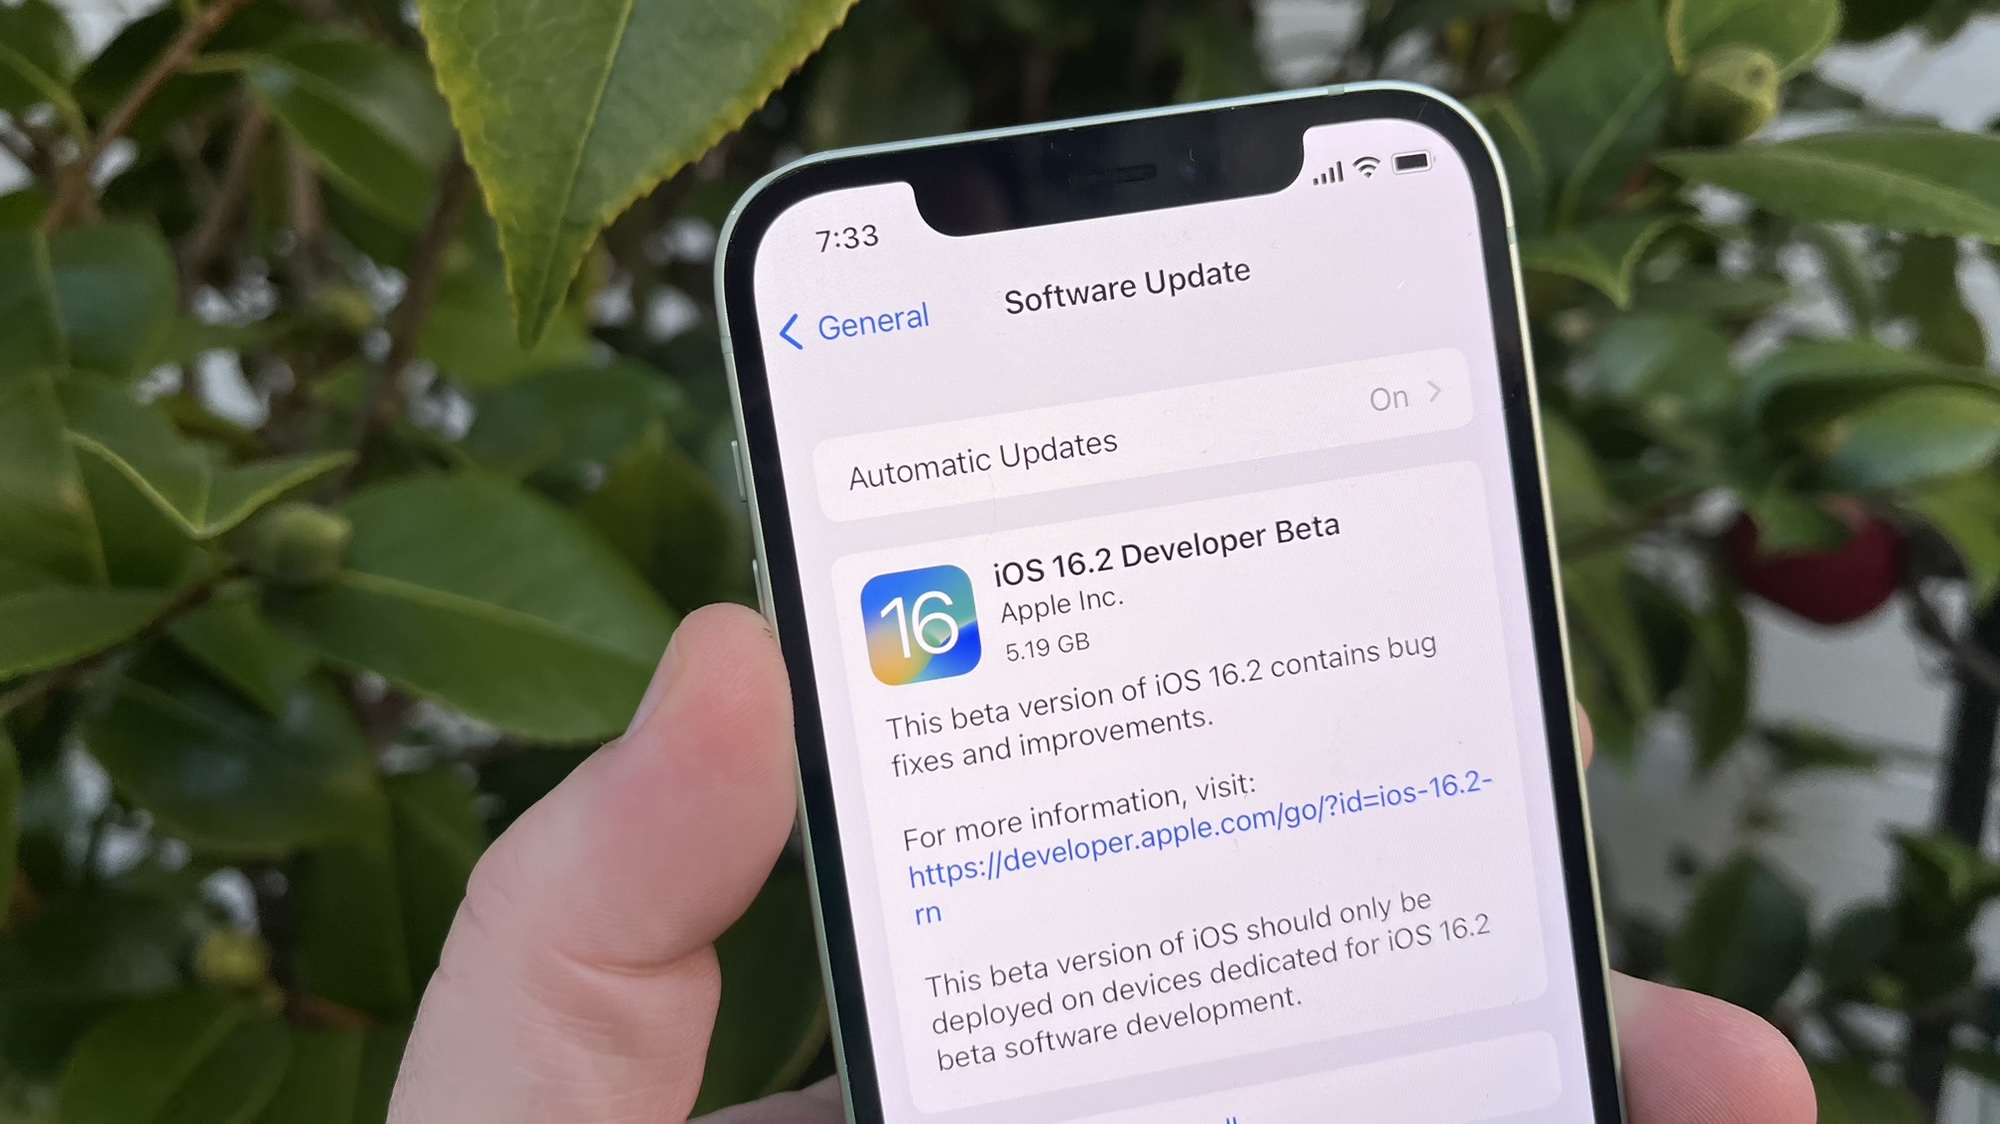 Pantalla de descarga de iOS 16.2 beta 1 en un iPhone frente a una planta